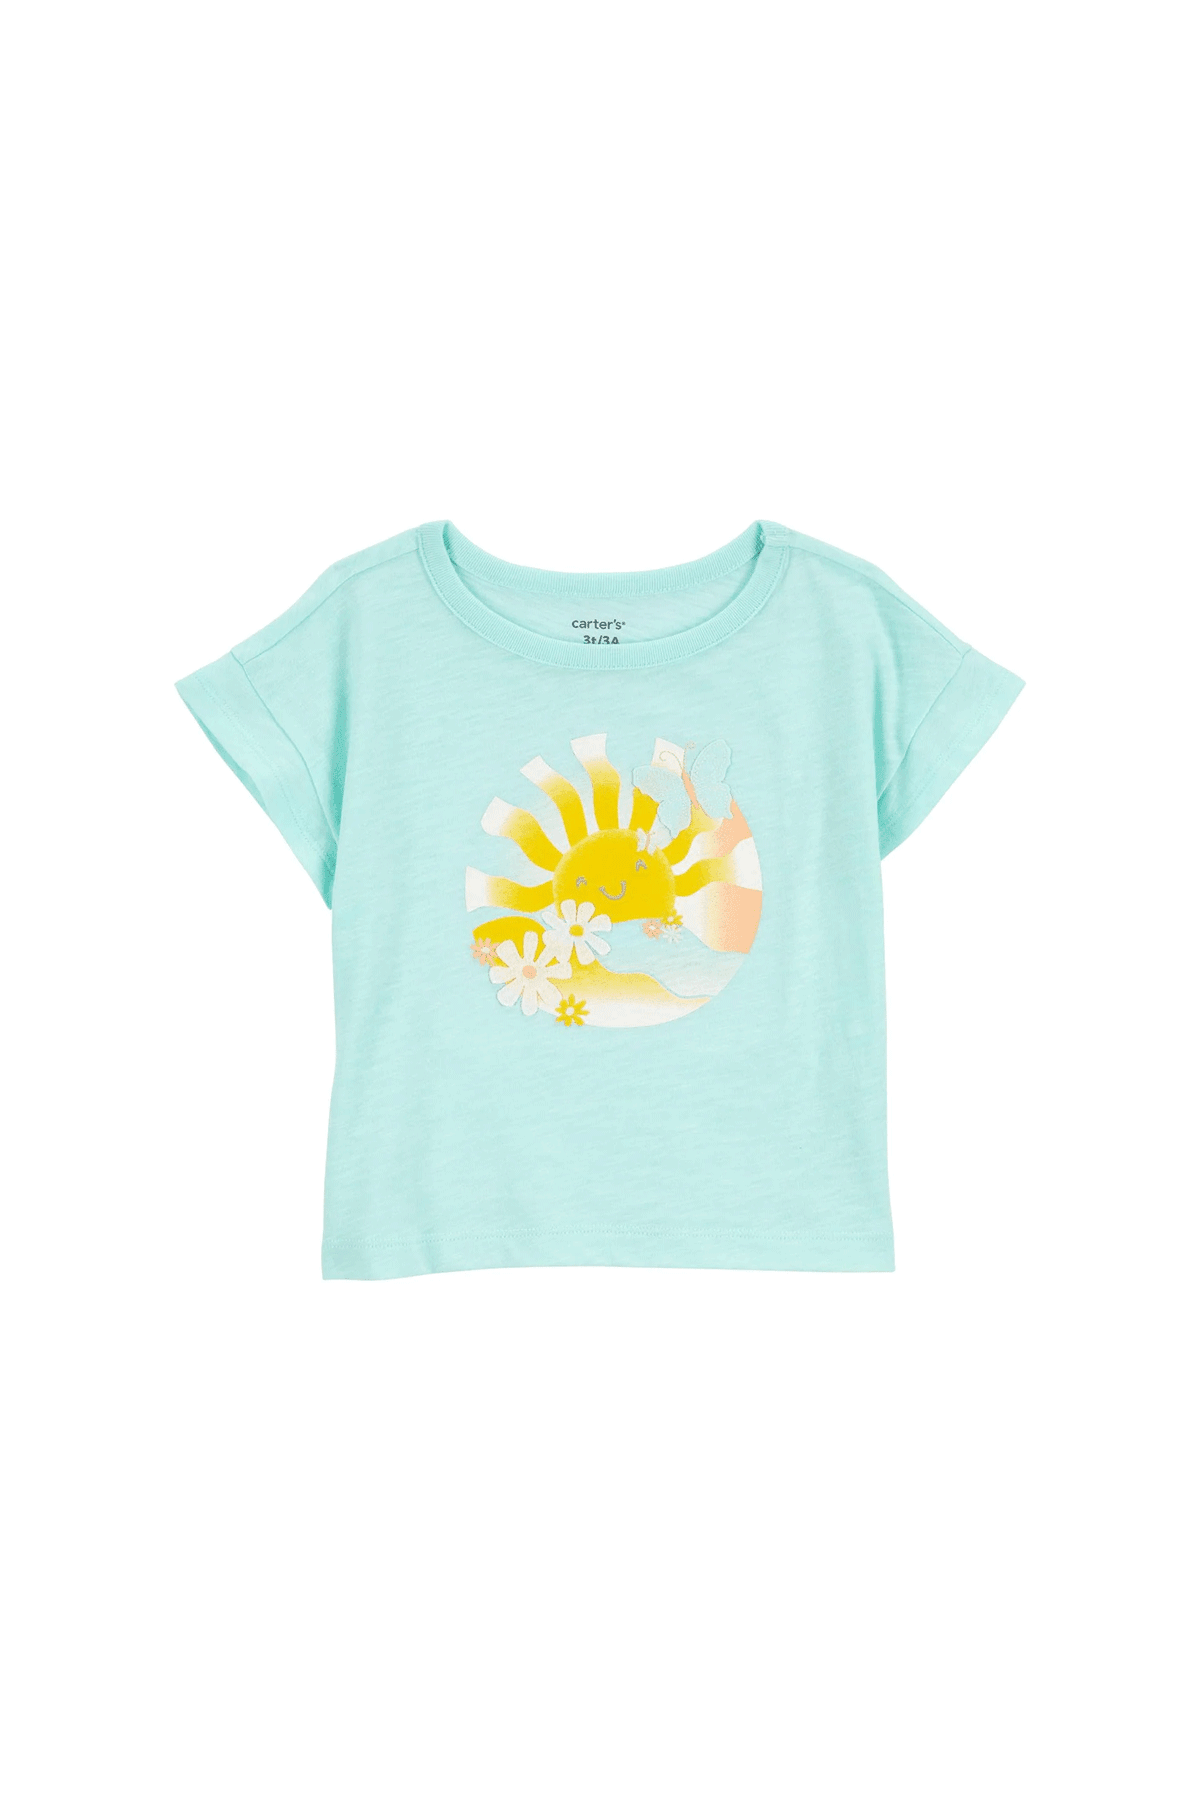 Carter's Küçük Kız Çocuk Tshirt Güneş Desenli